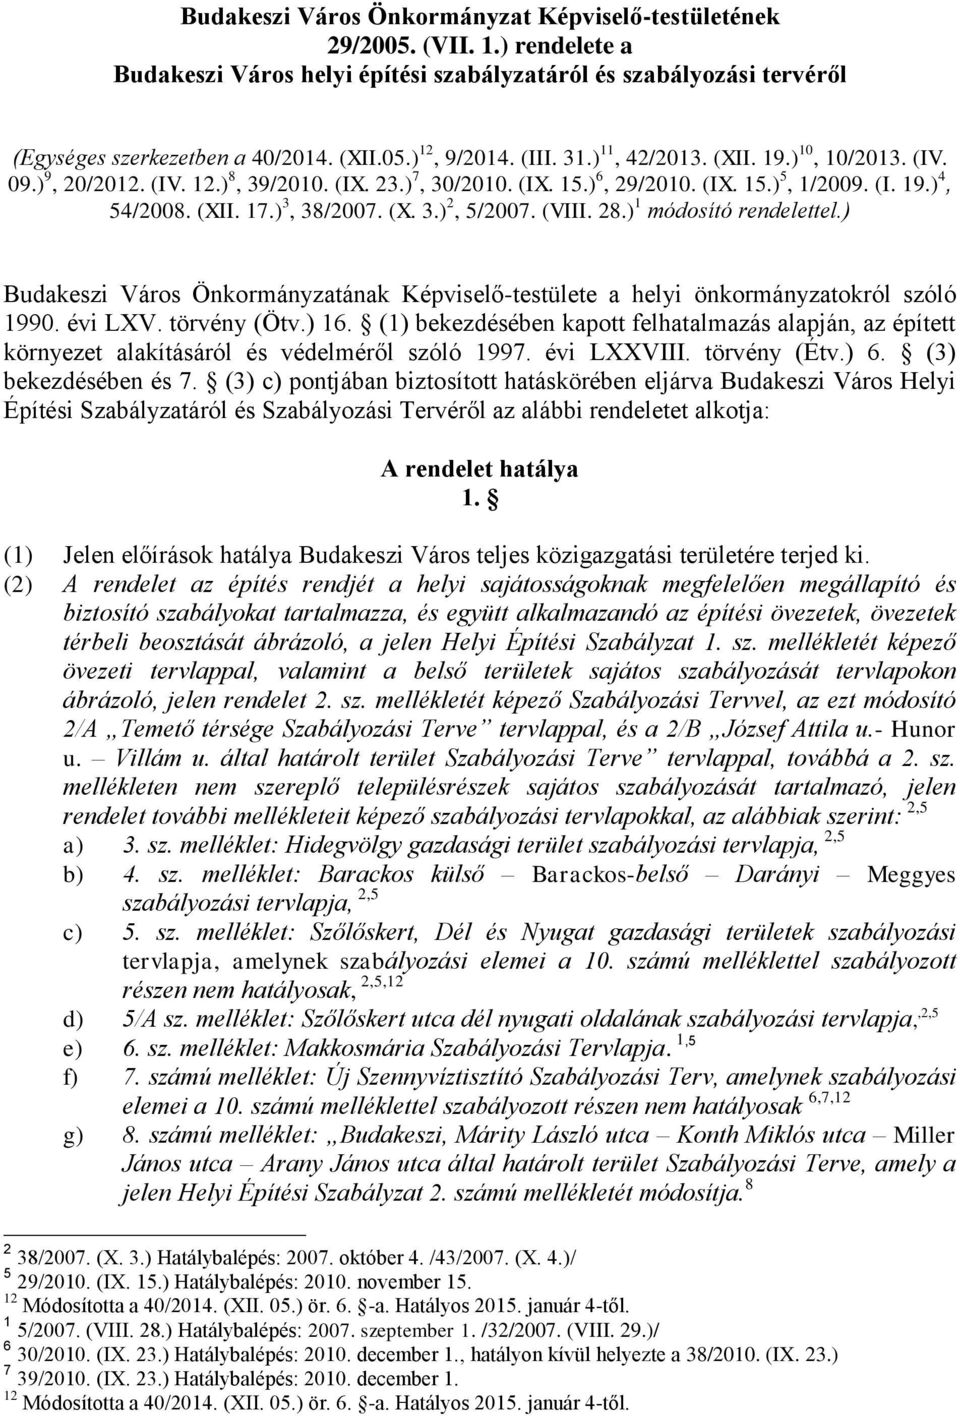 (X. 3.) 2, 5/2007. (VIII. 28.) 1 módosító rendelettel.) Budakeszi Város Önkormányzatának Képviselő-testülete a helyi önkormányzatokról szóló 1990. évi LXV. törvény (Ötv.) 16.